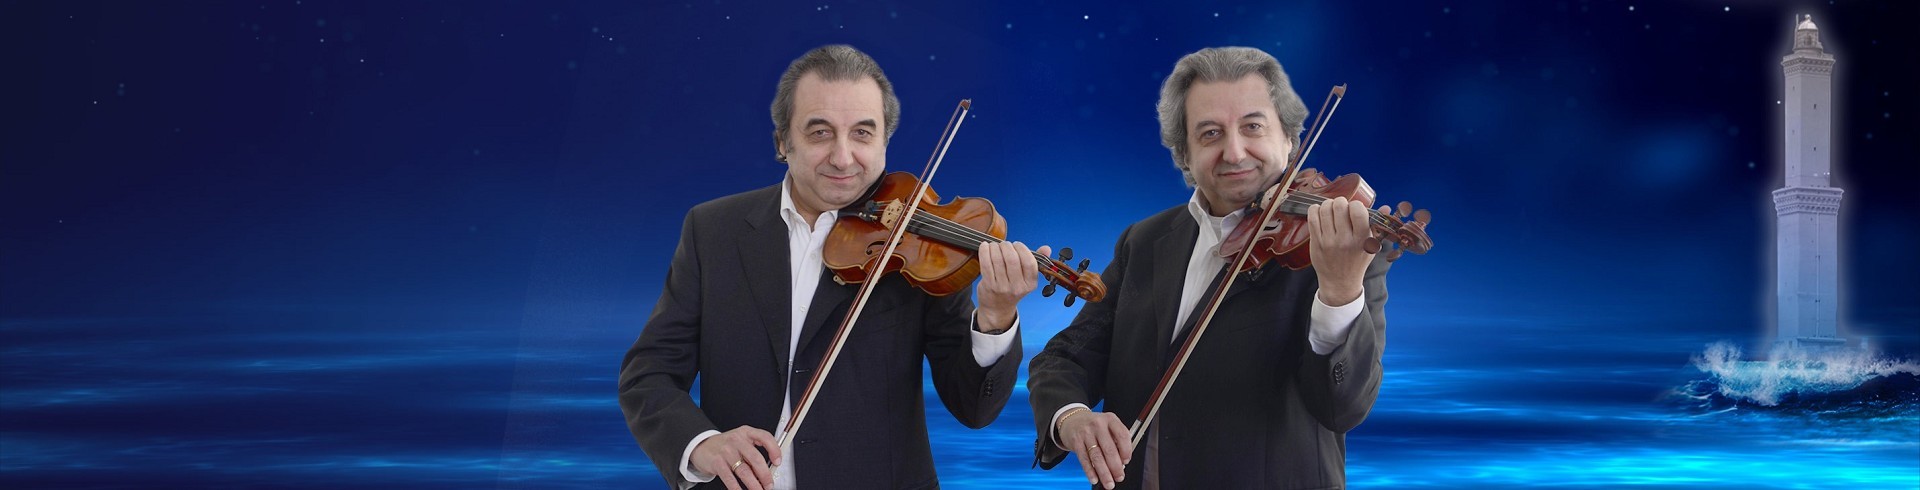 Due violini per sognare